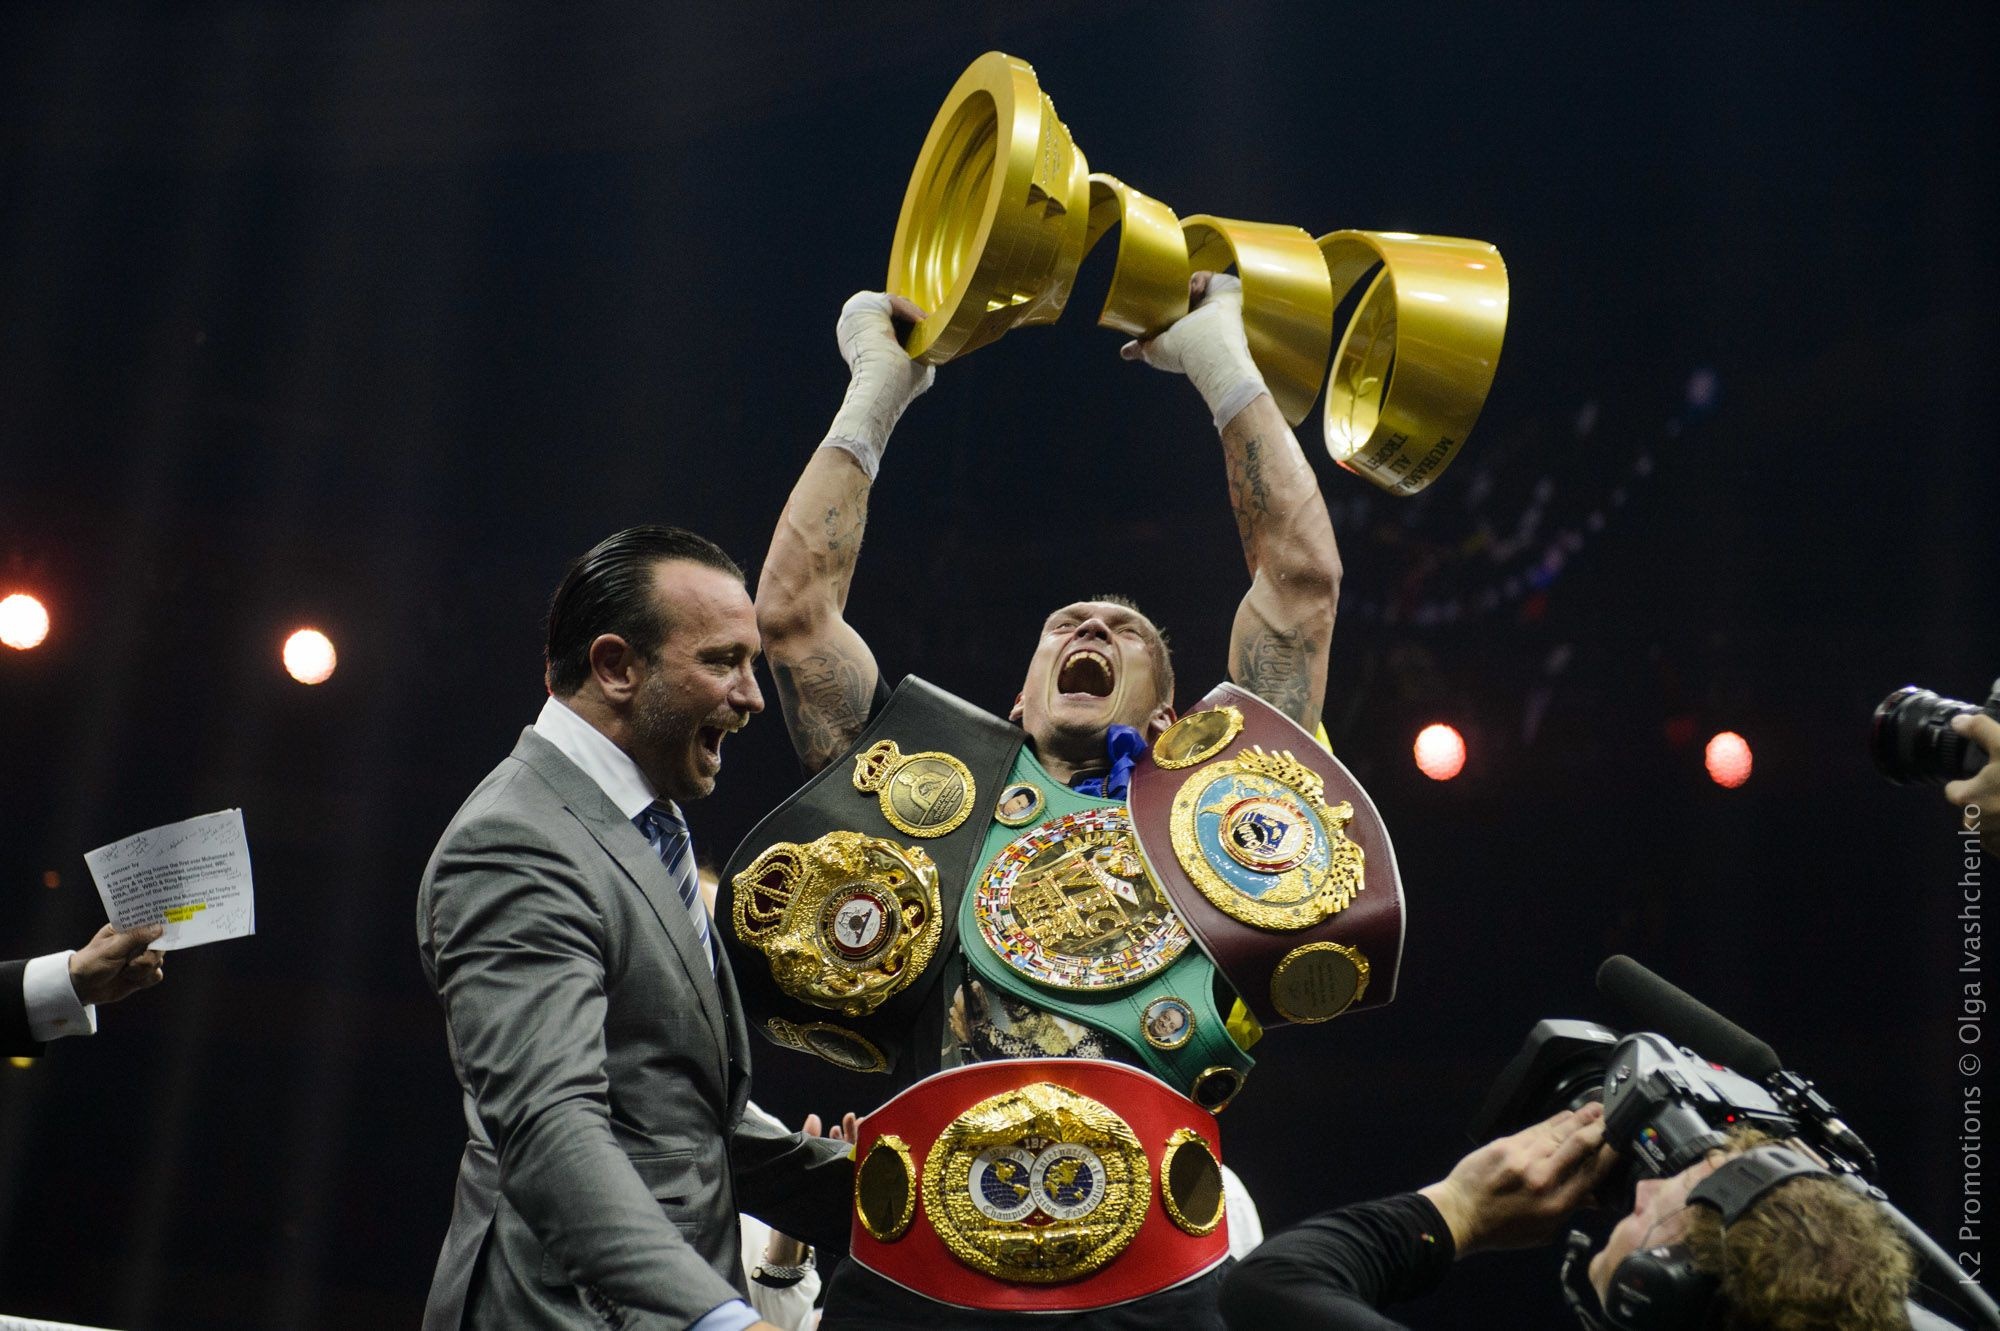 Олександр Усик зібрав усі найпрестижніші пояси у своєму дивізіоні і став першим в історії України абсолютним чемпіоном світу у професійному боксі